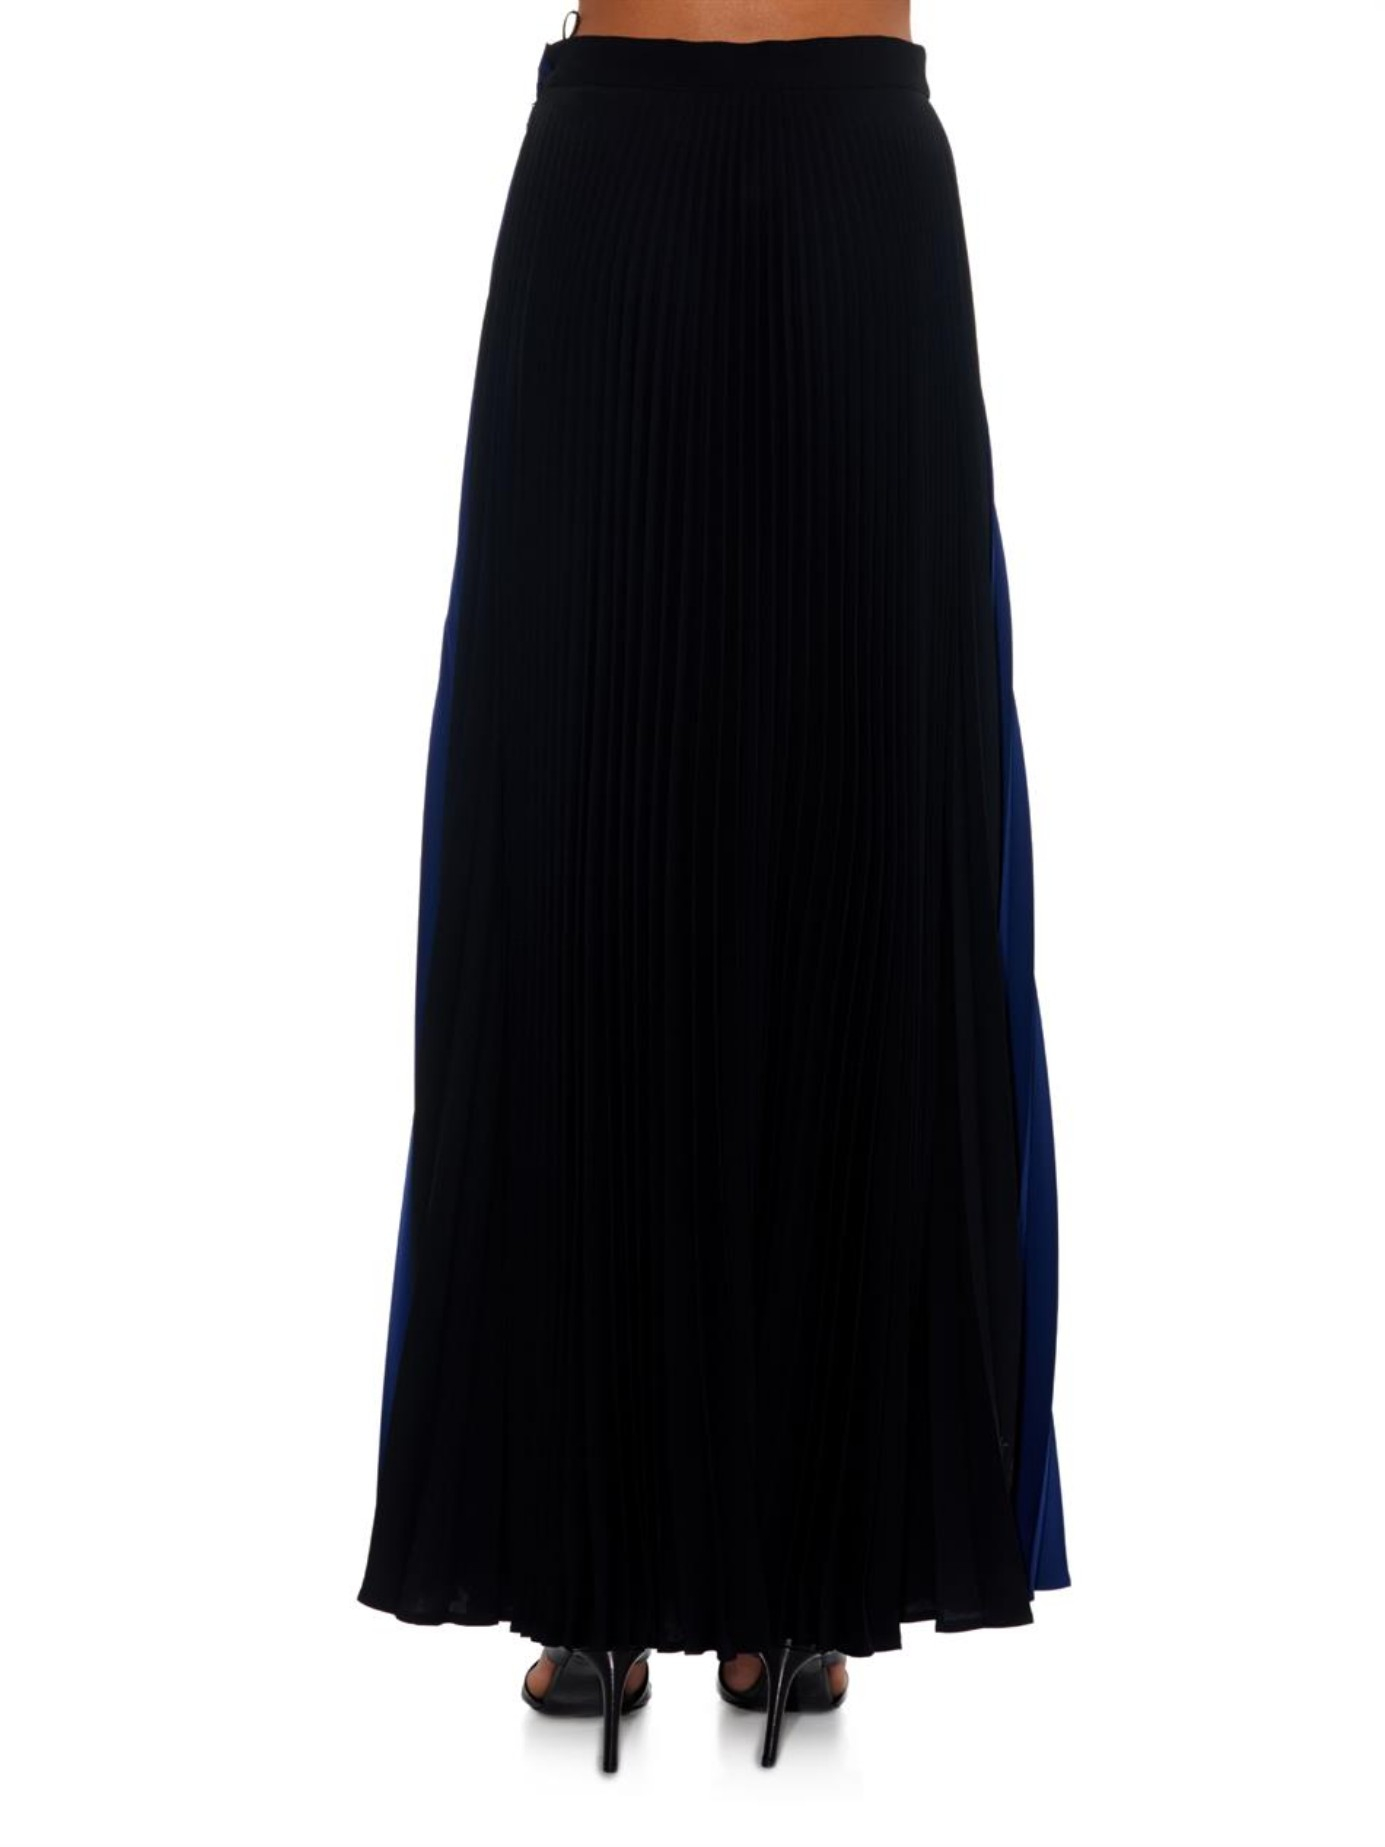 long skirt black colour